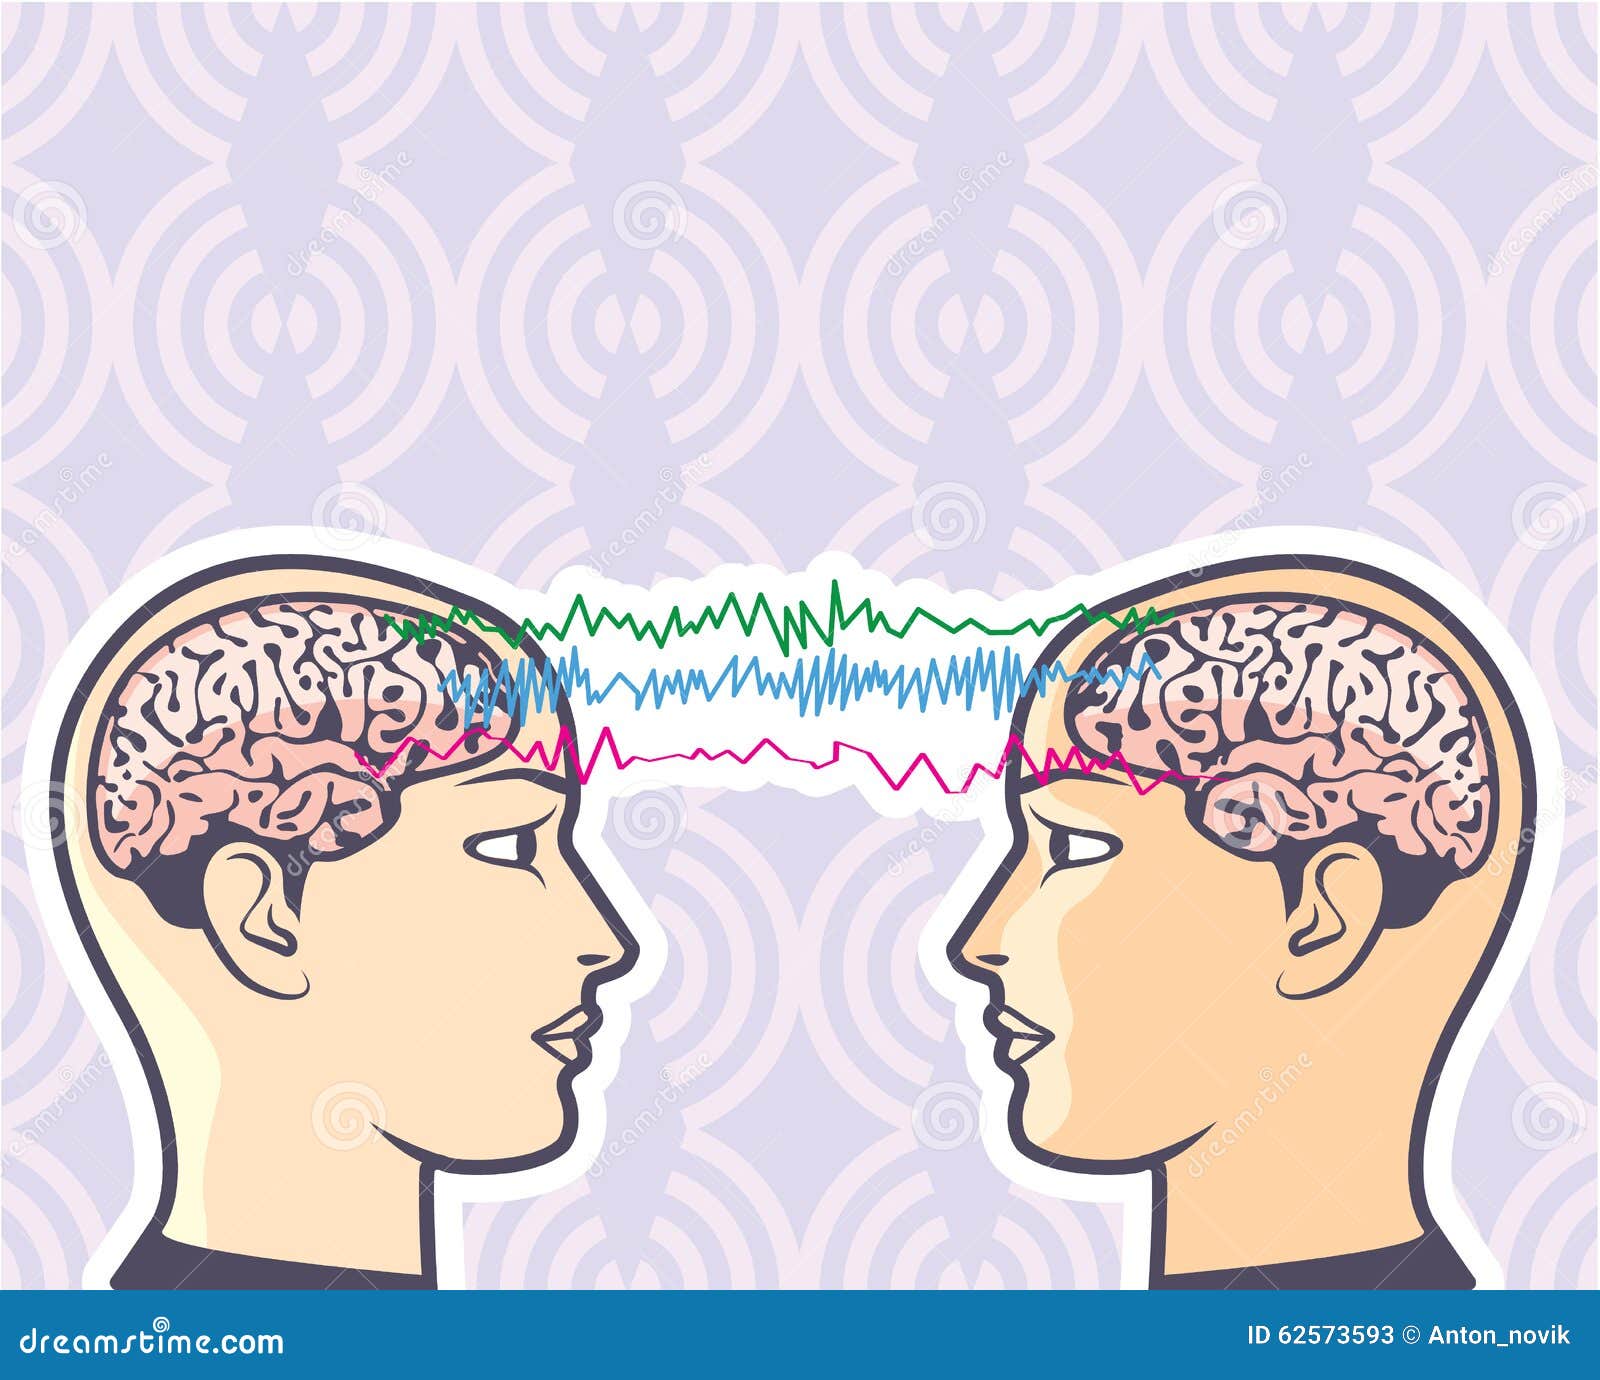 telepathy between human brains via brainwaves  